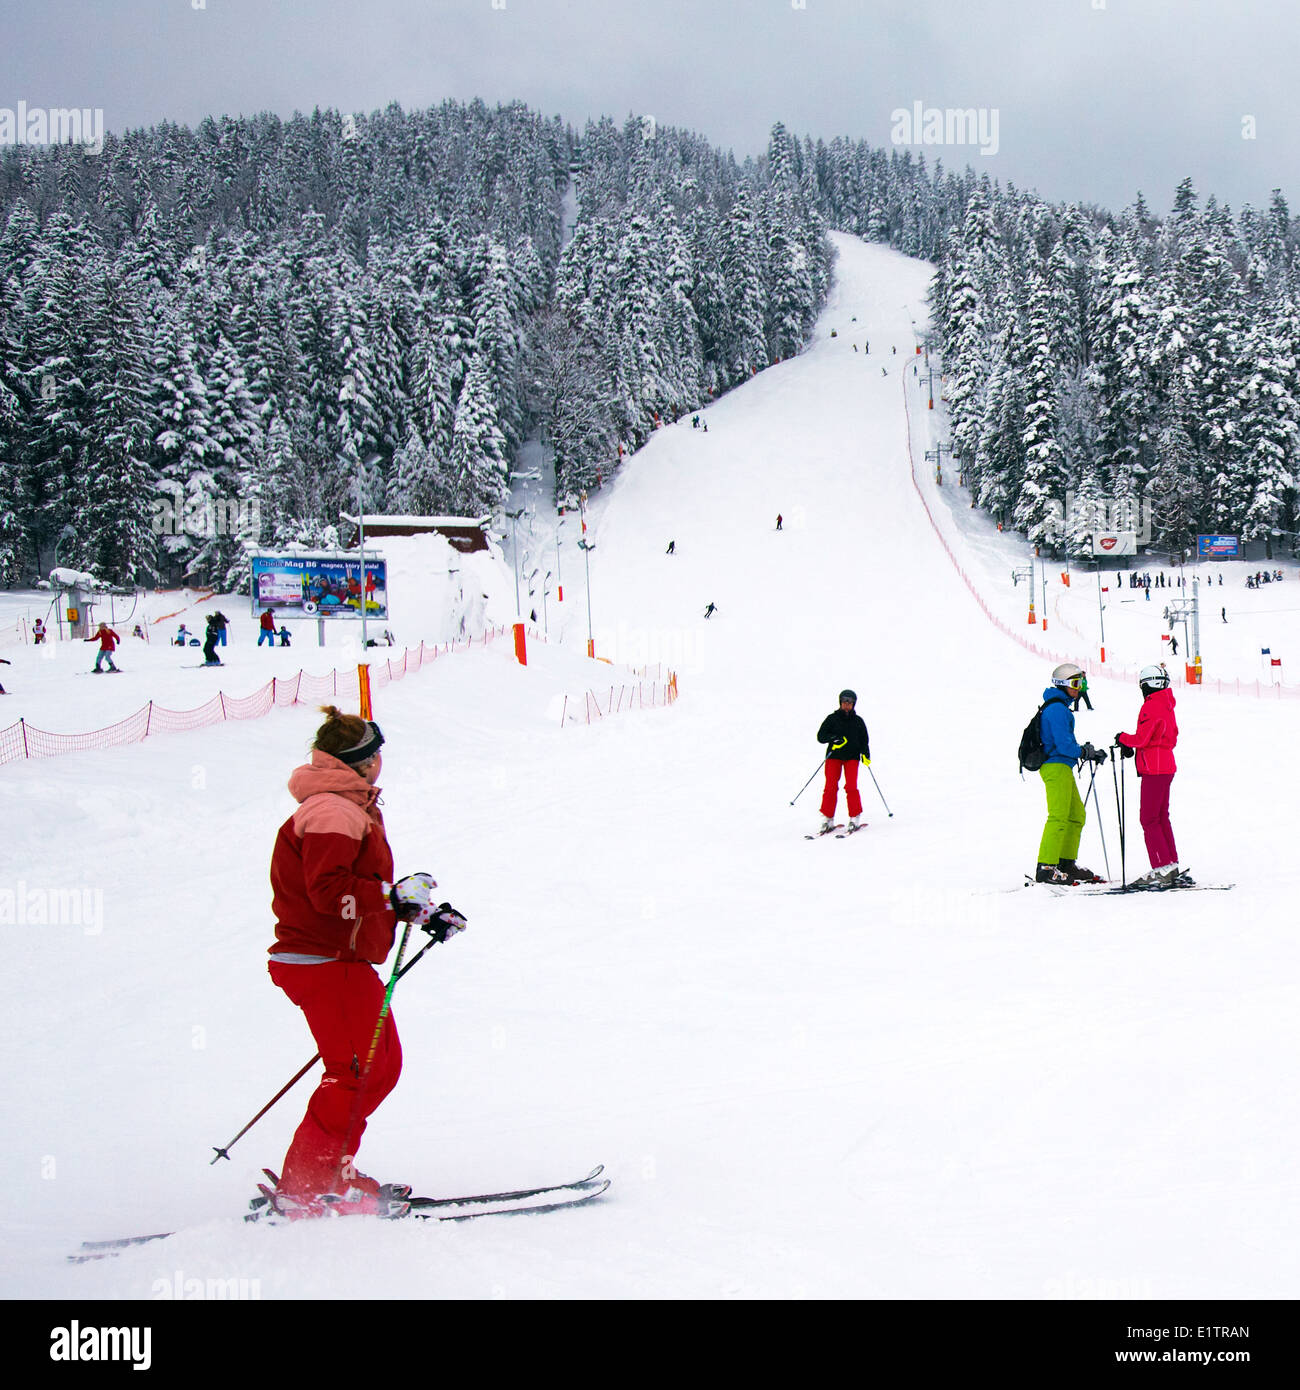 Europe, Poland, Malopolska province, Zakopane city, ski slope Stock Photo